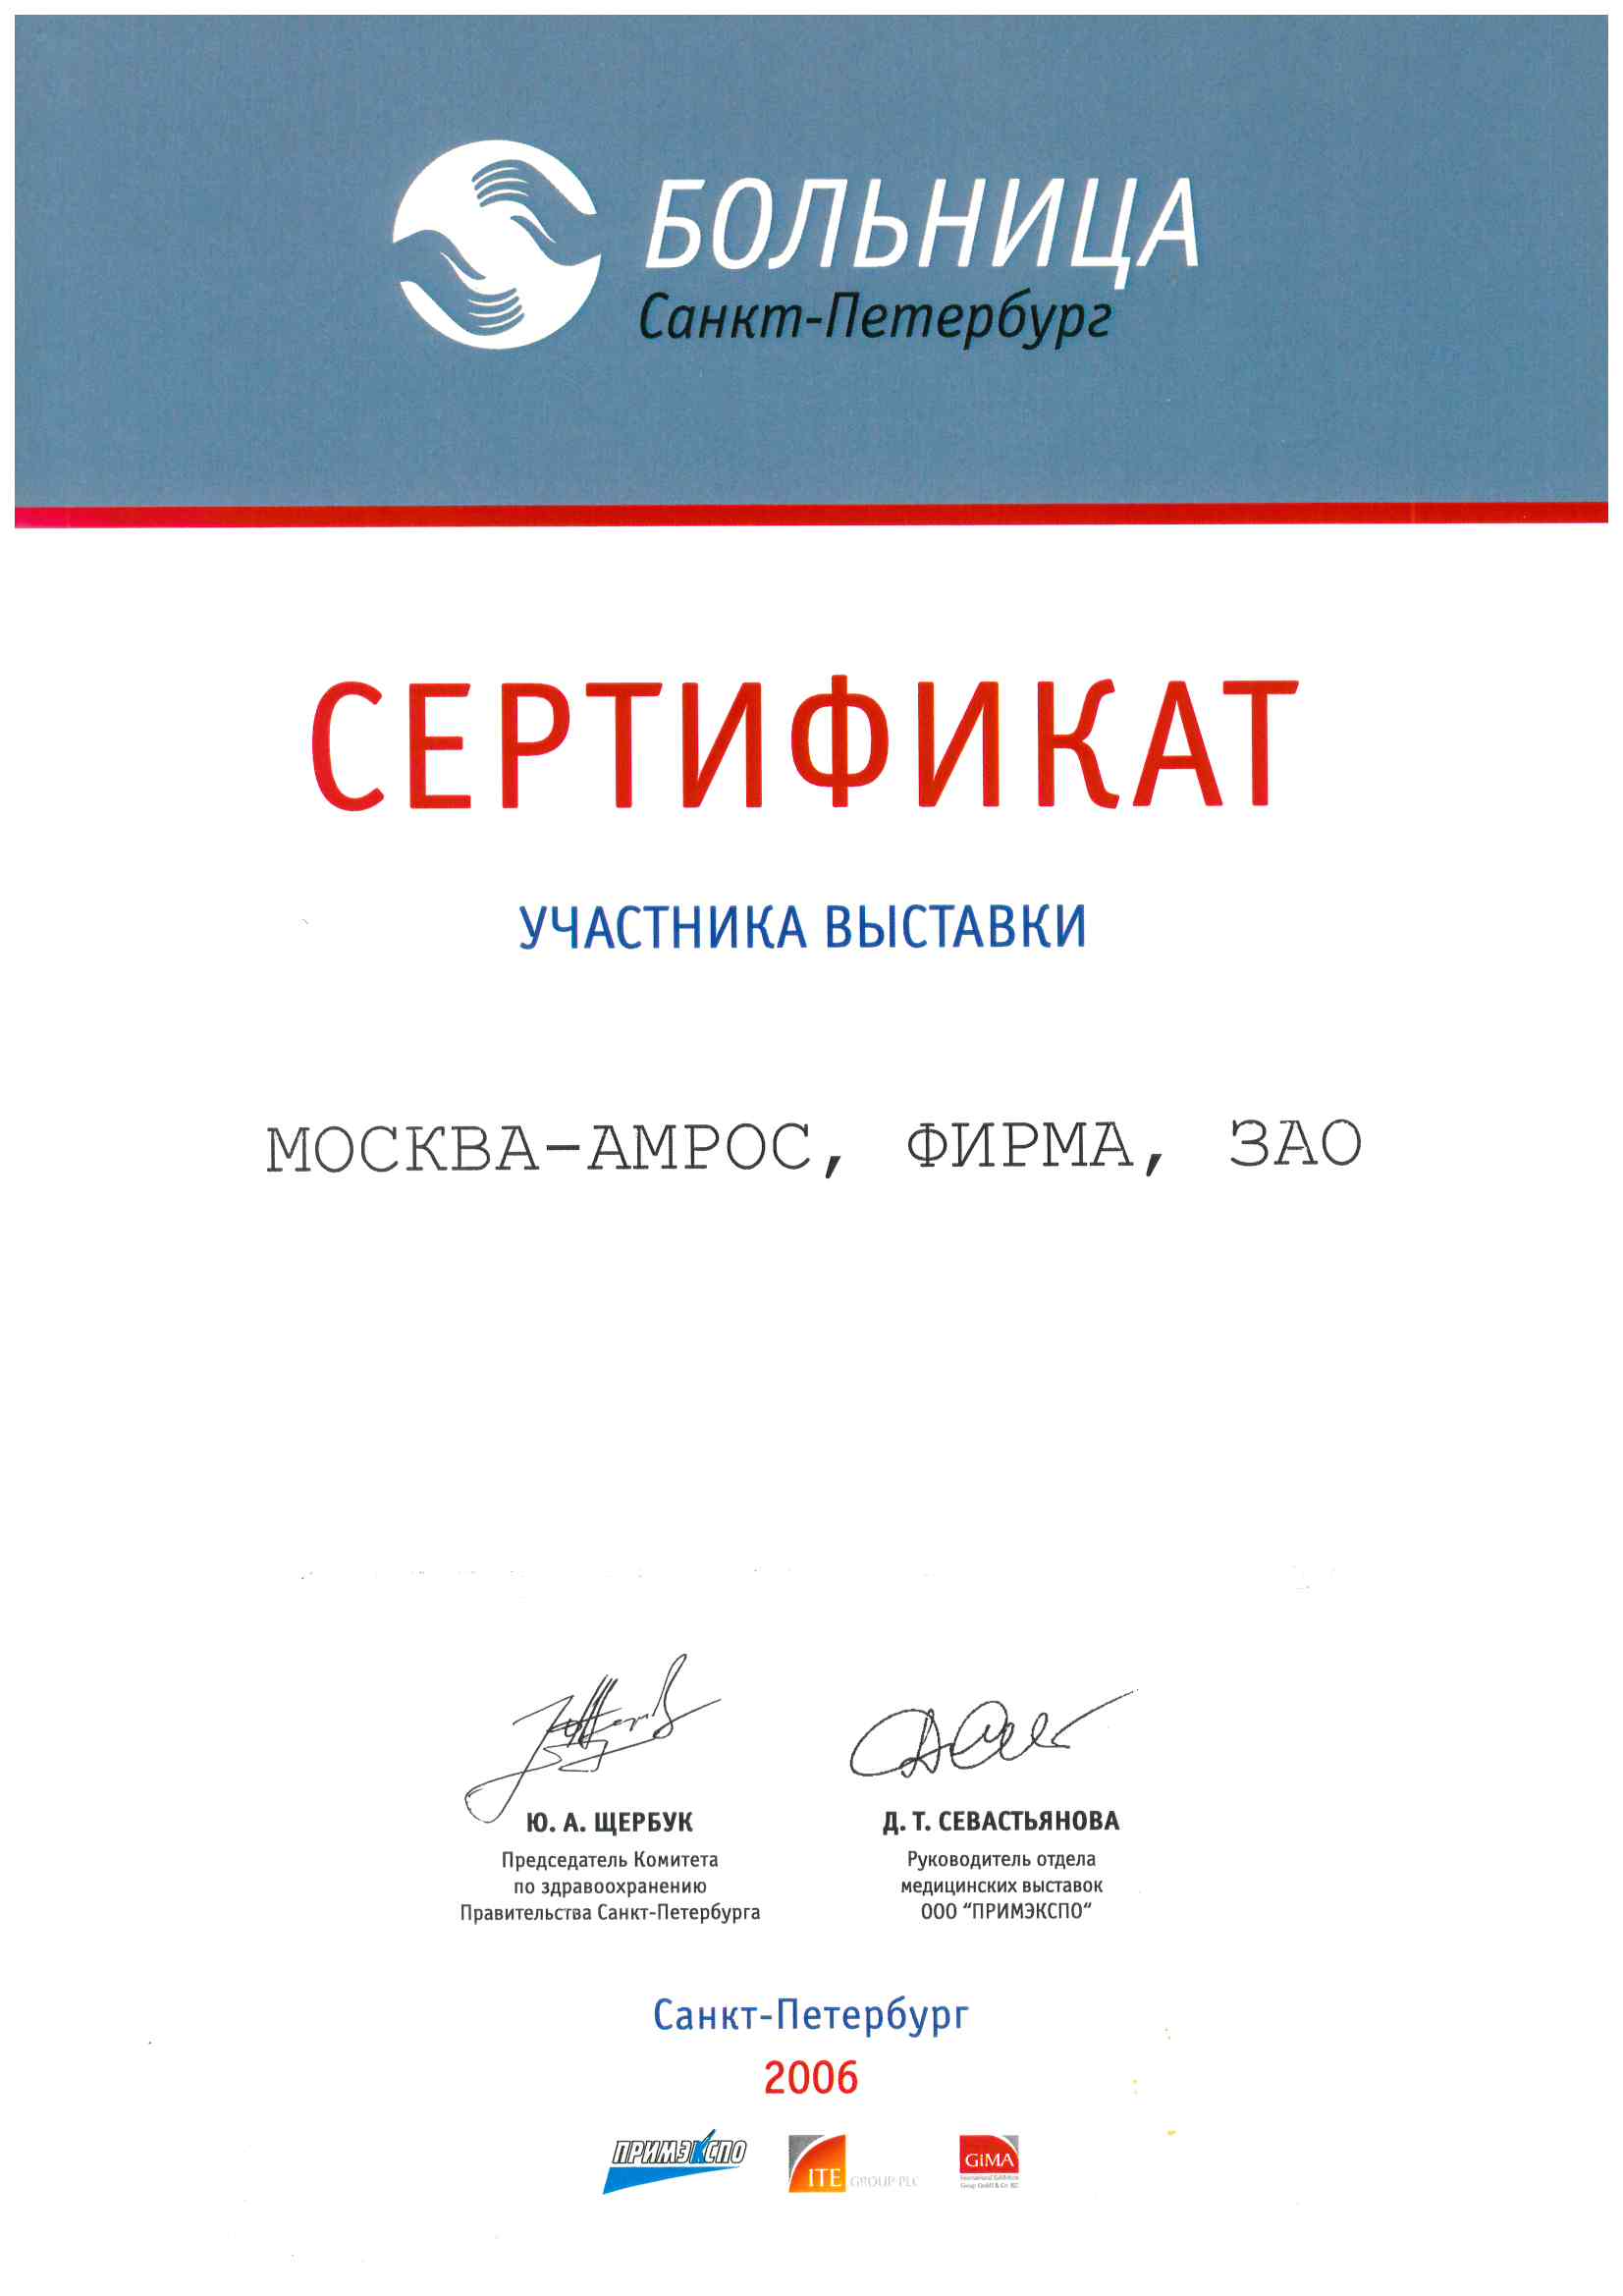 Сертификат участника выставки по здравоохранению «БОЛЬНИЦА Санкт-Петербург», 2006 г.